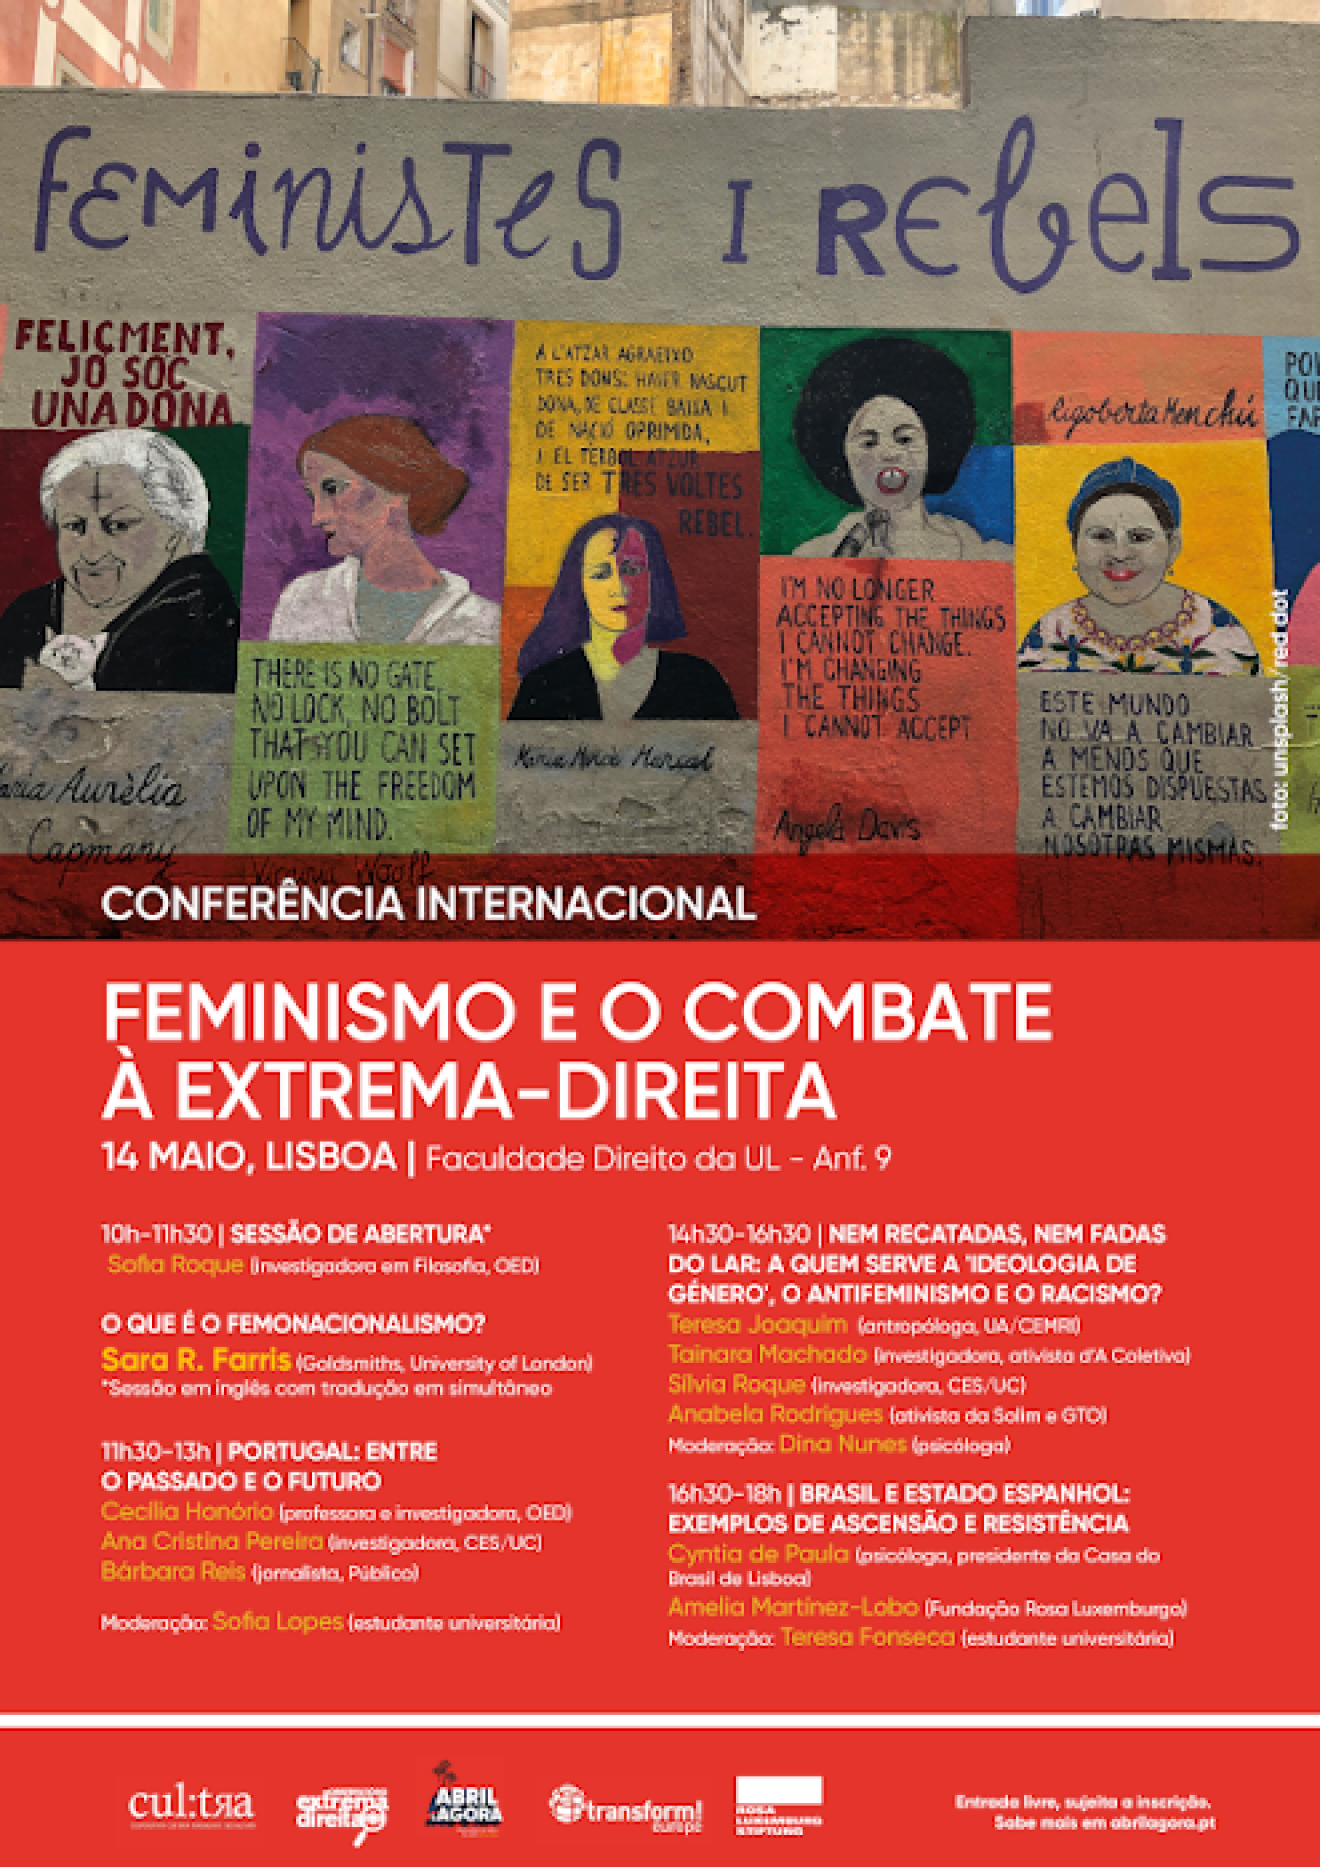 Conferência Internacional “Feminismo e o Combate à Extrema-Direita”